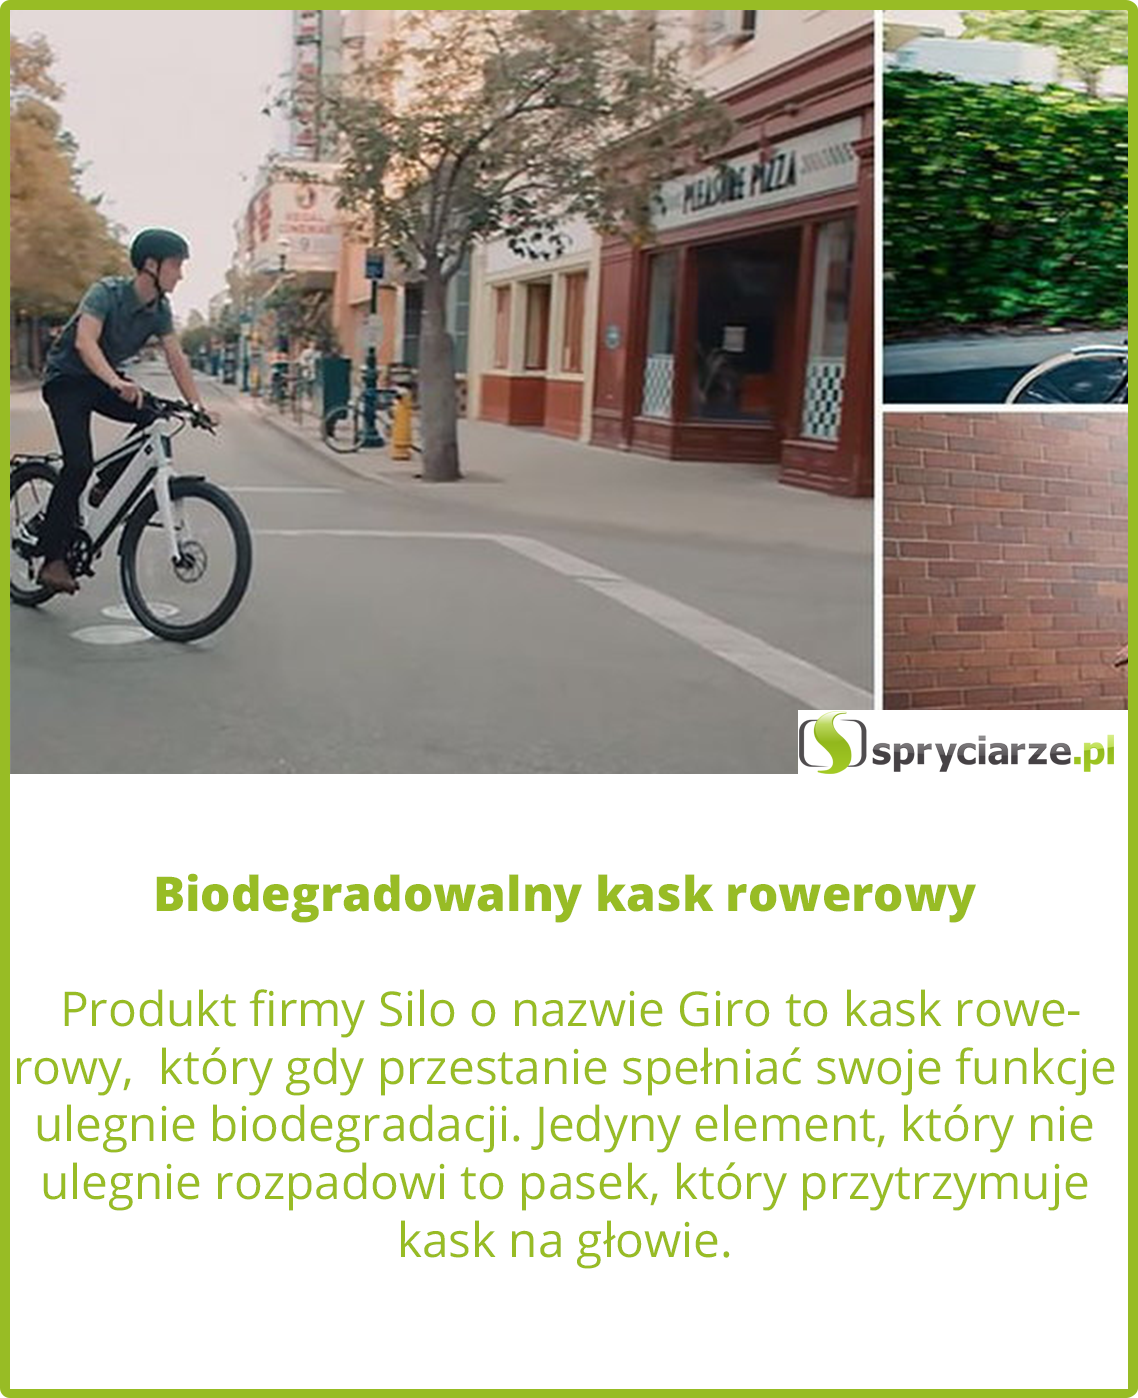 Biodegradowalny kask rowerowy